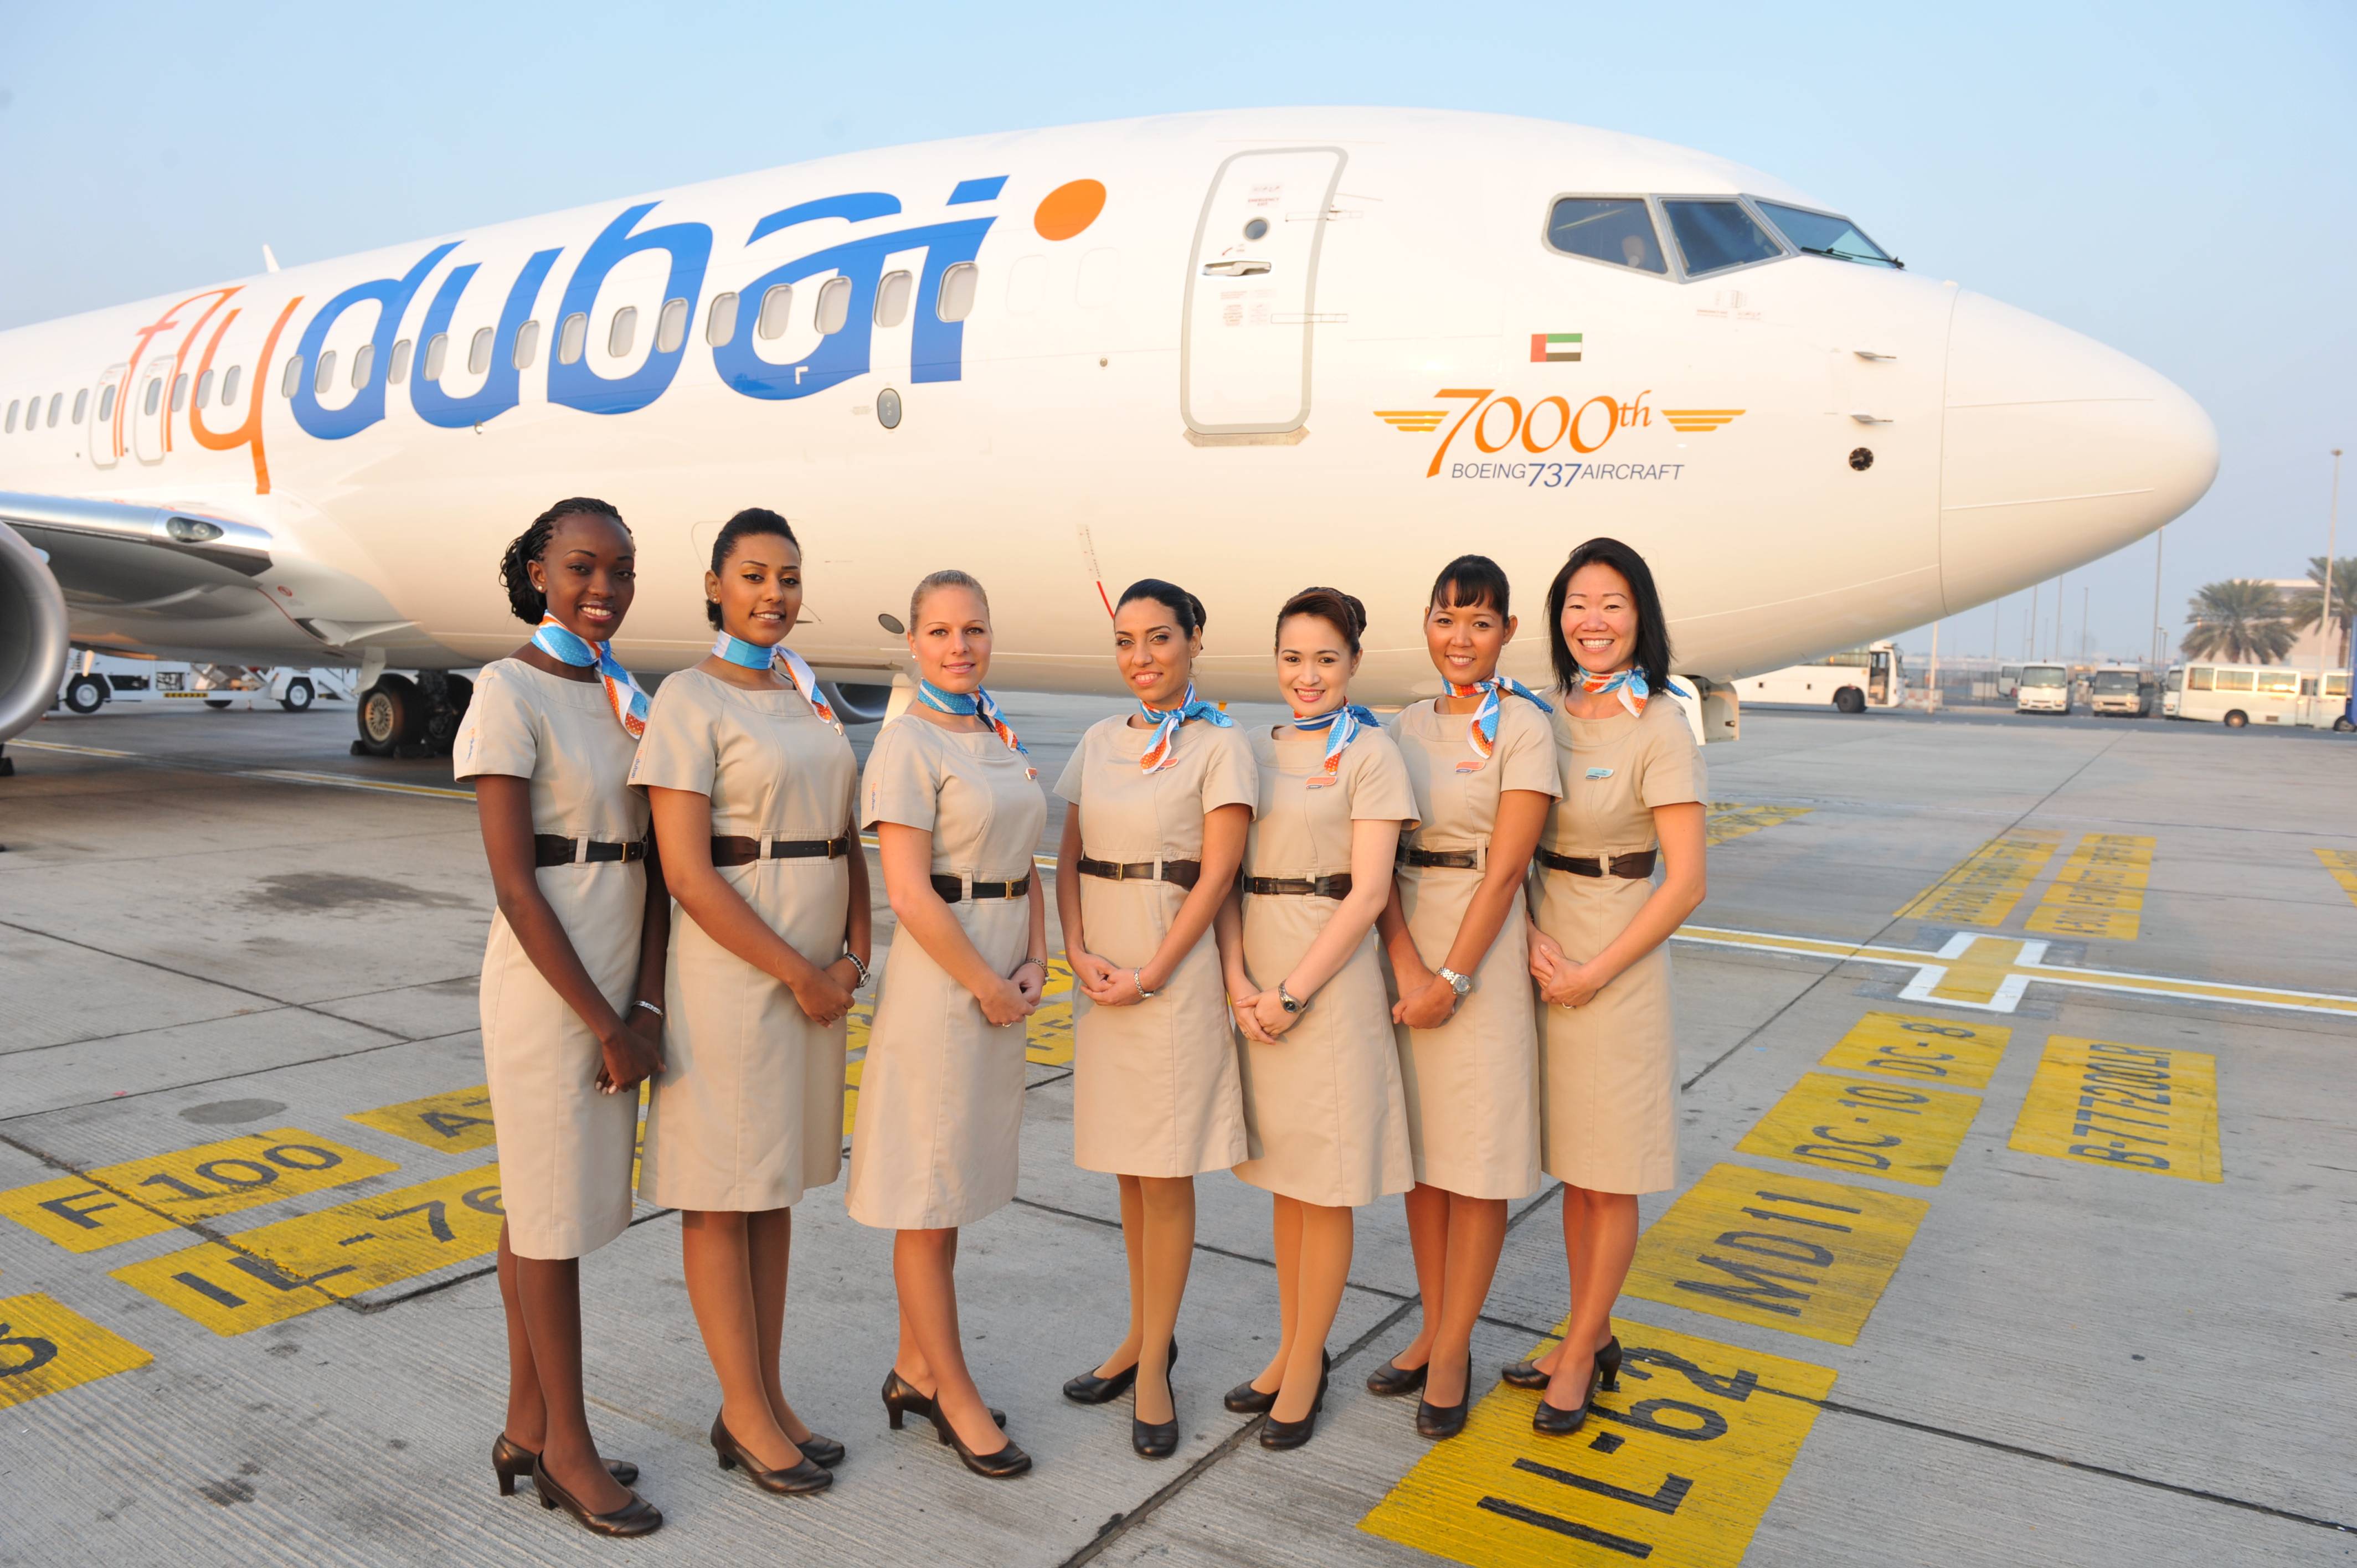 Самолеты flydubai: фото салона на рейсах бизнес-класса и эконом